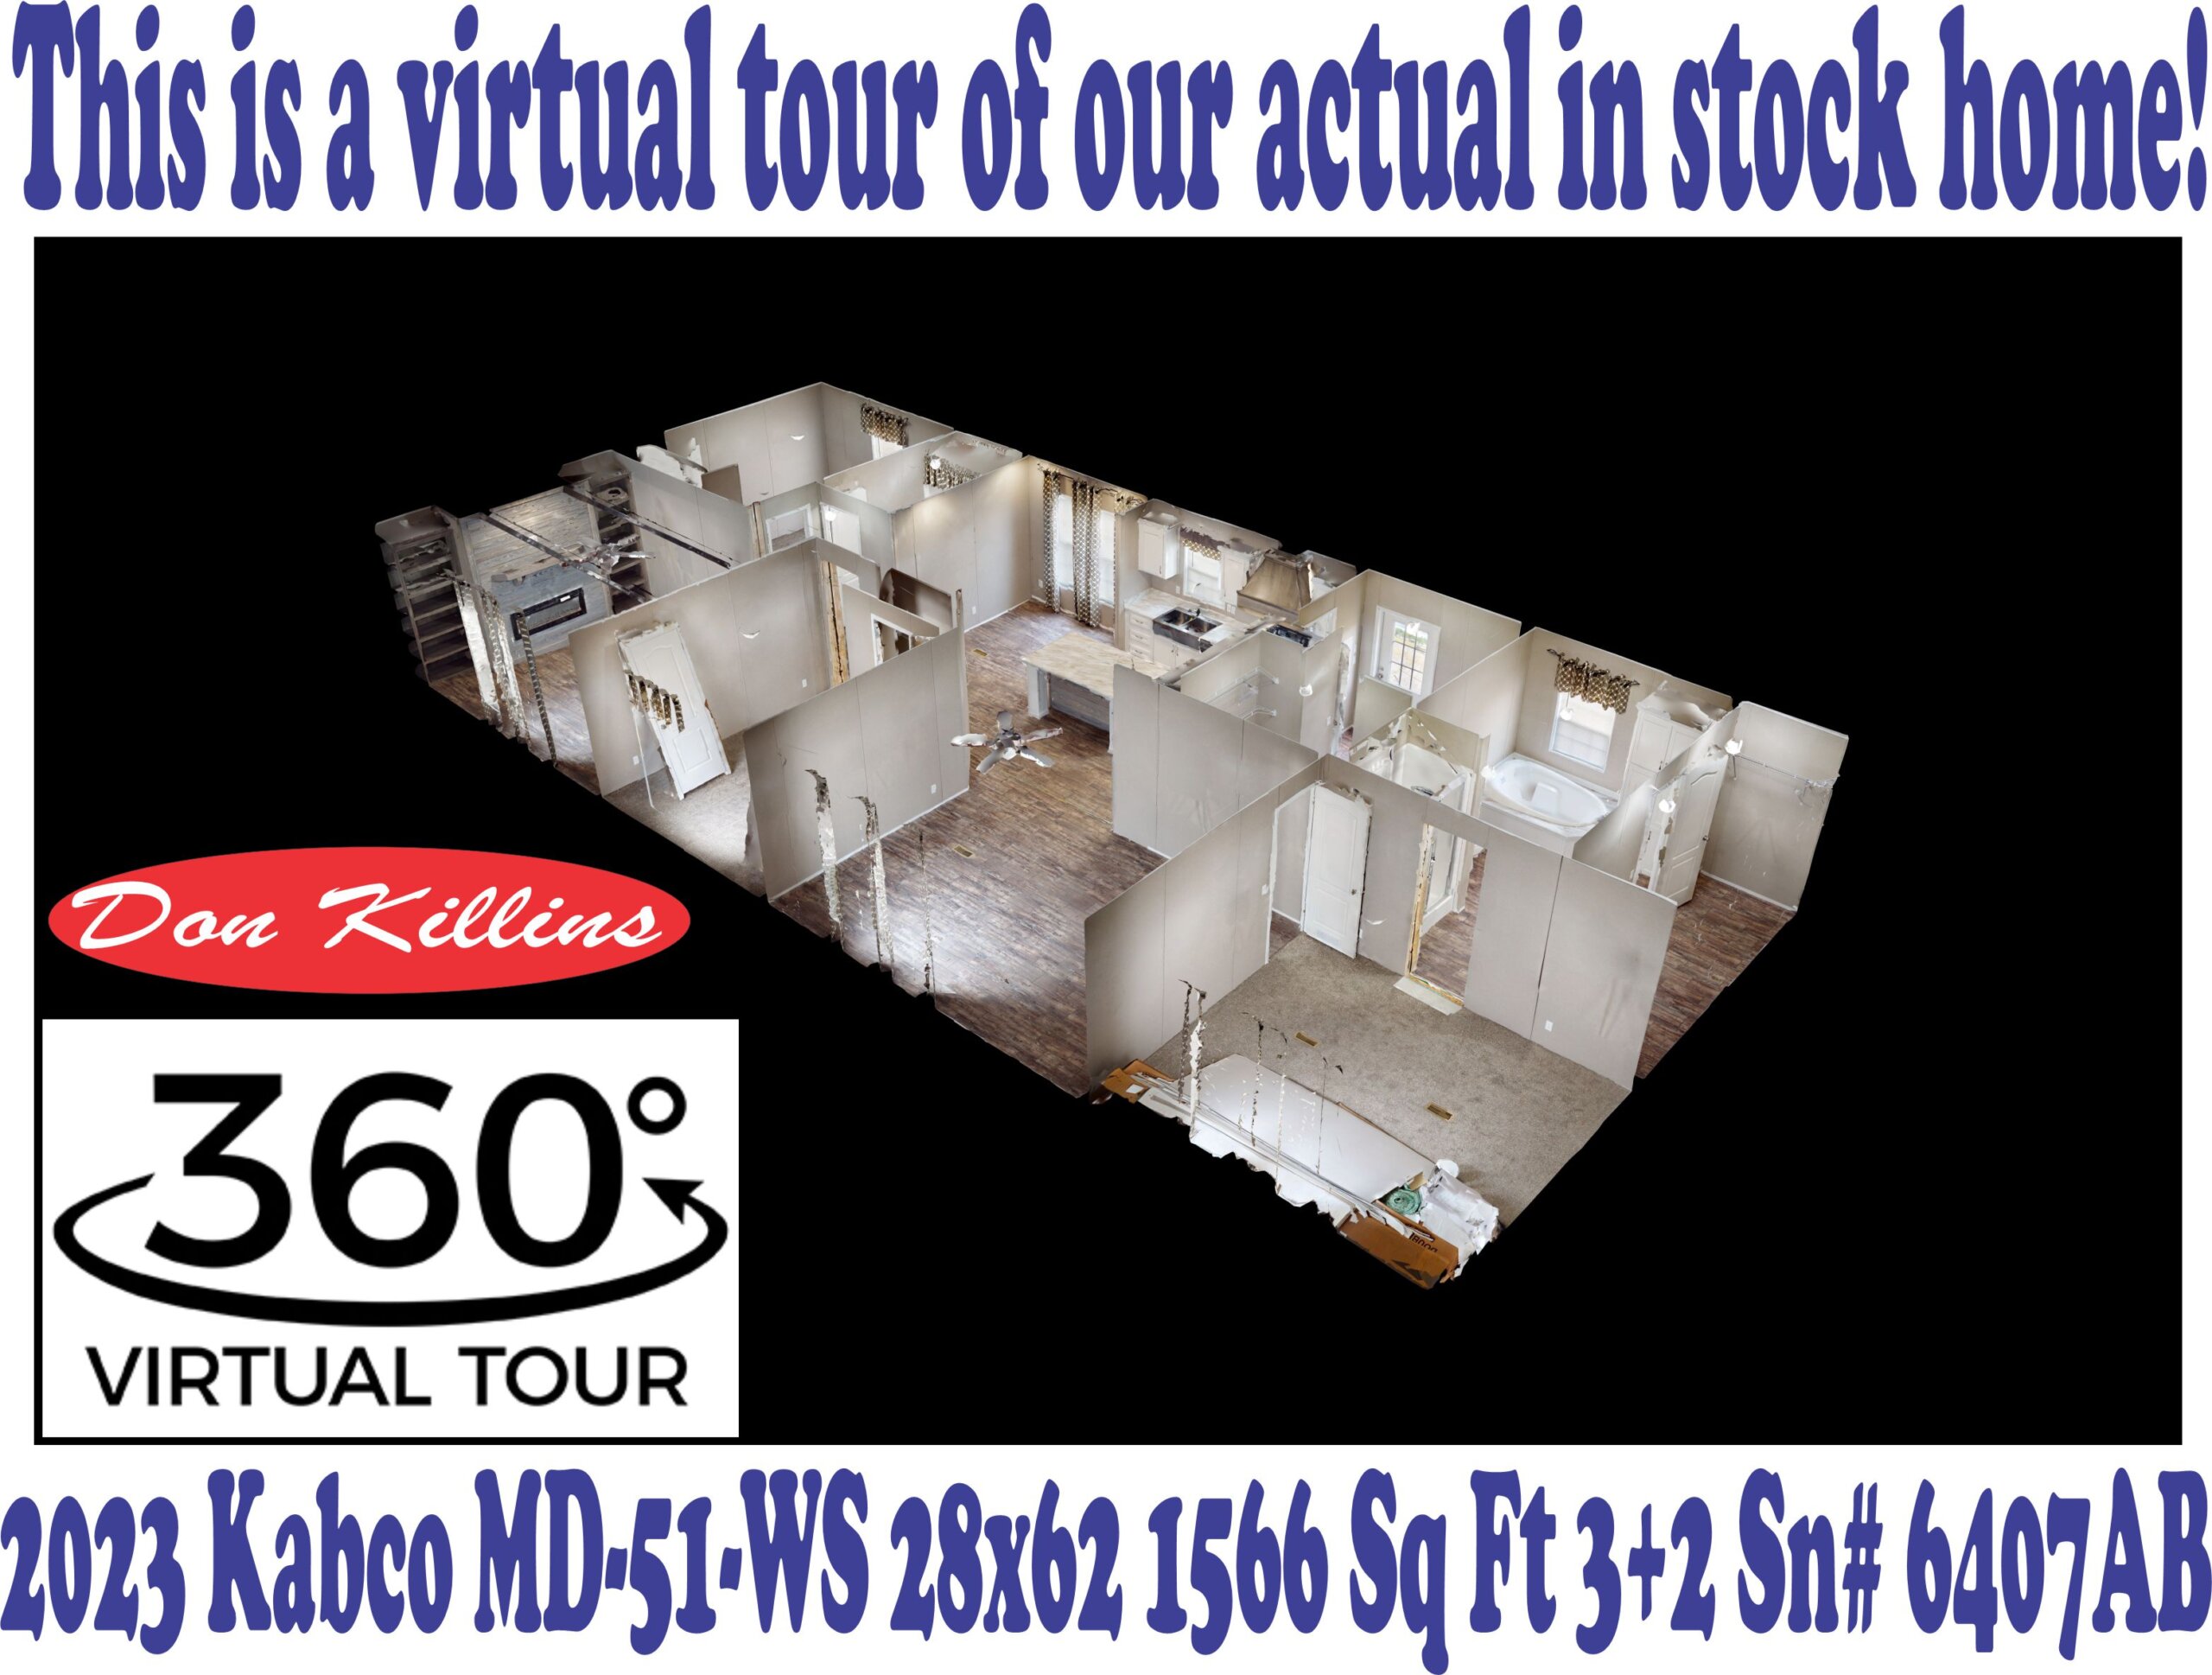 Dollhouse Virtual Tour Sn# 6407AB